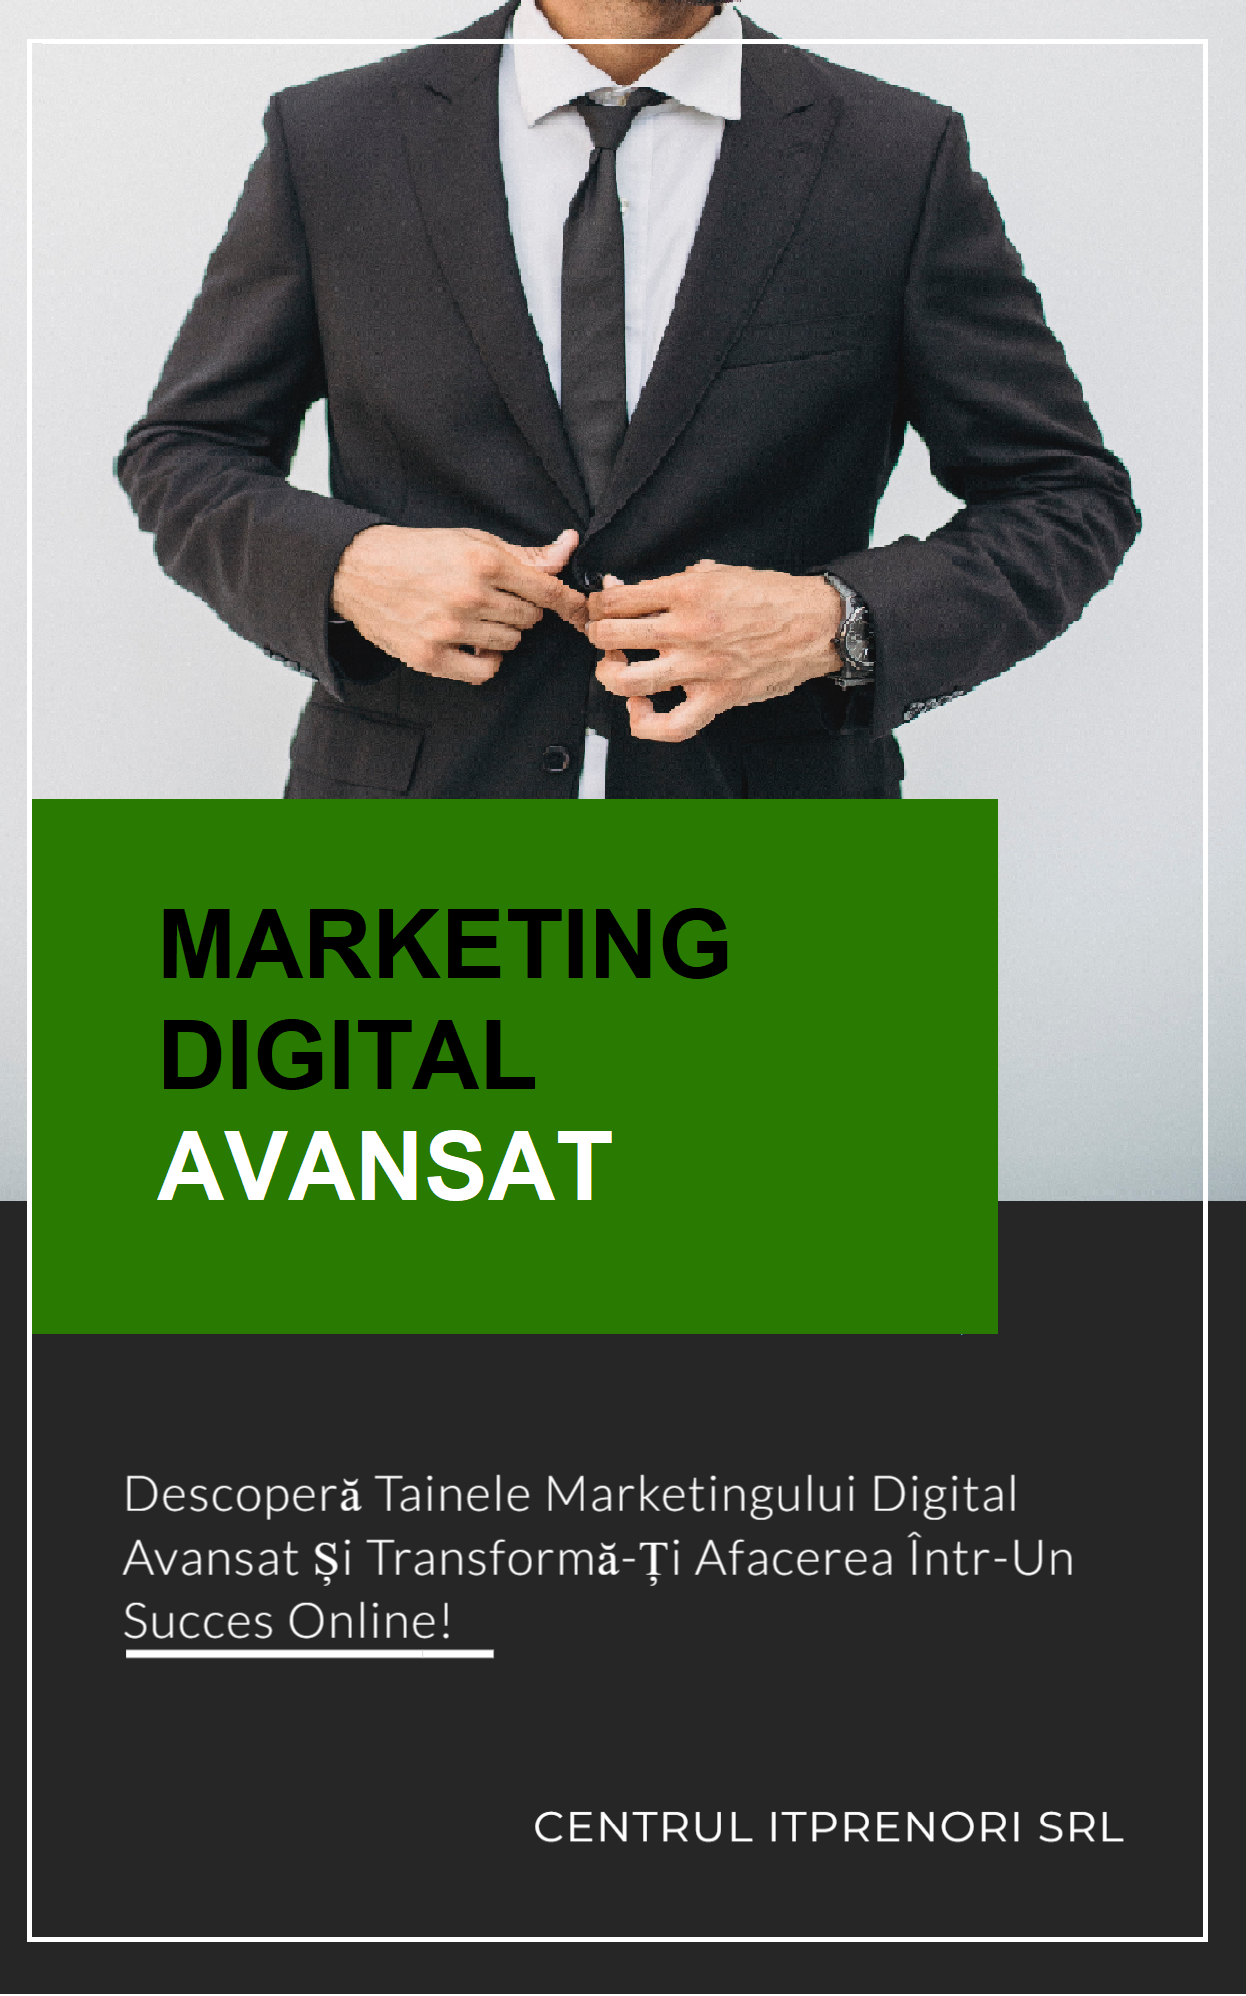 Descoperă tainele Marketingului Digital Avansat și transformă-ți afacerea într-un succes online!